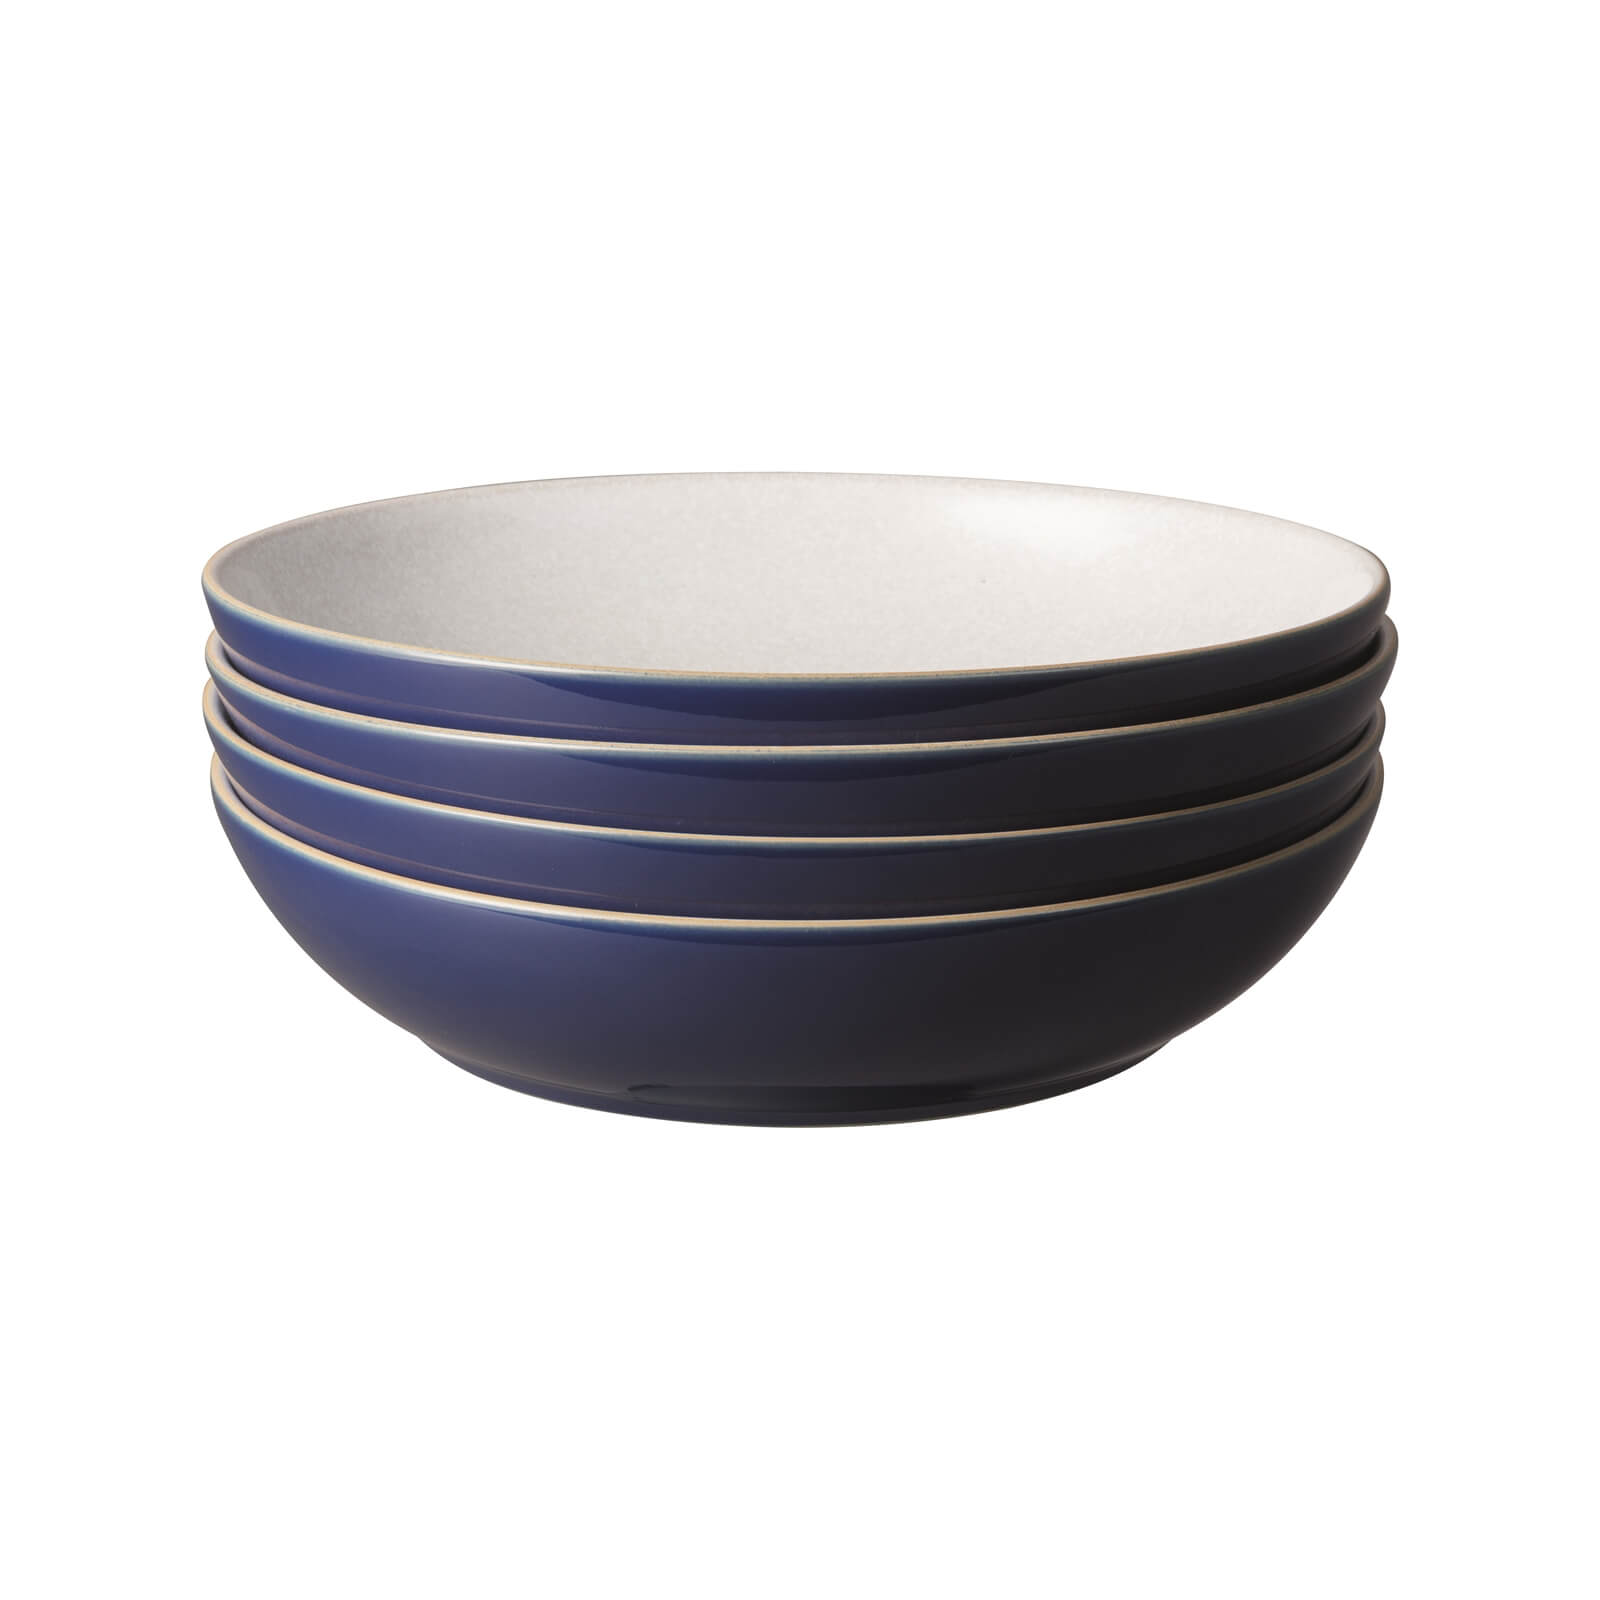 Elements Pasta Bowls - Dark Blue - 4 Piece Set